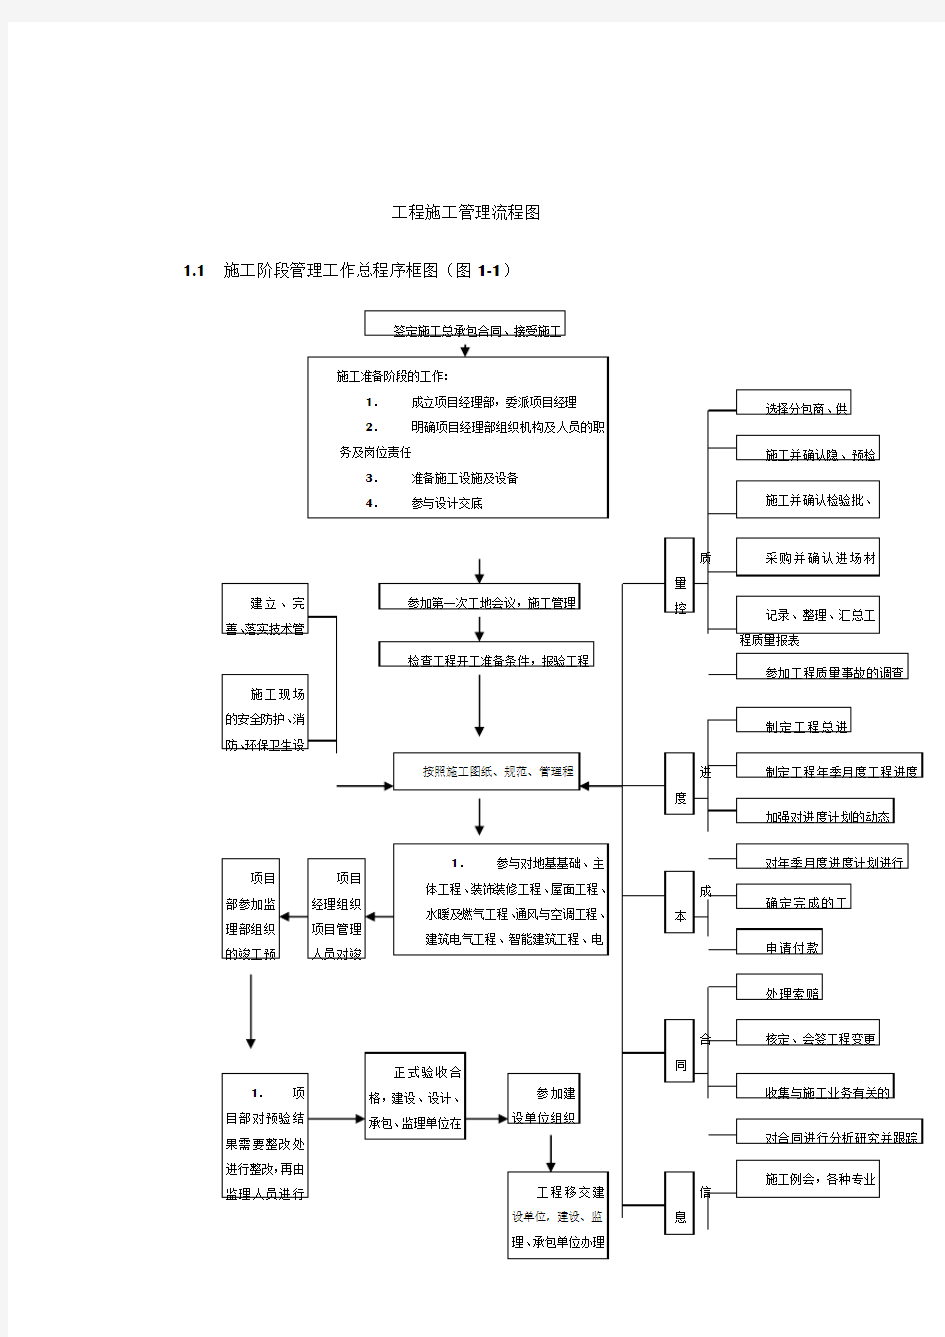 工程施工管理系统流程图